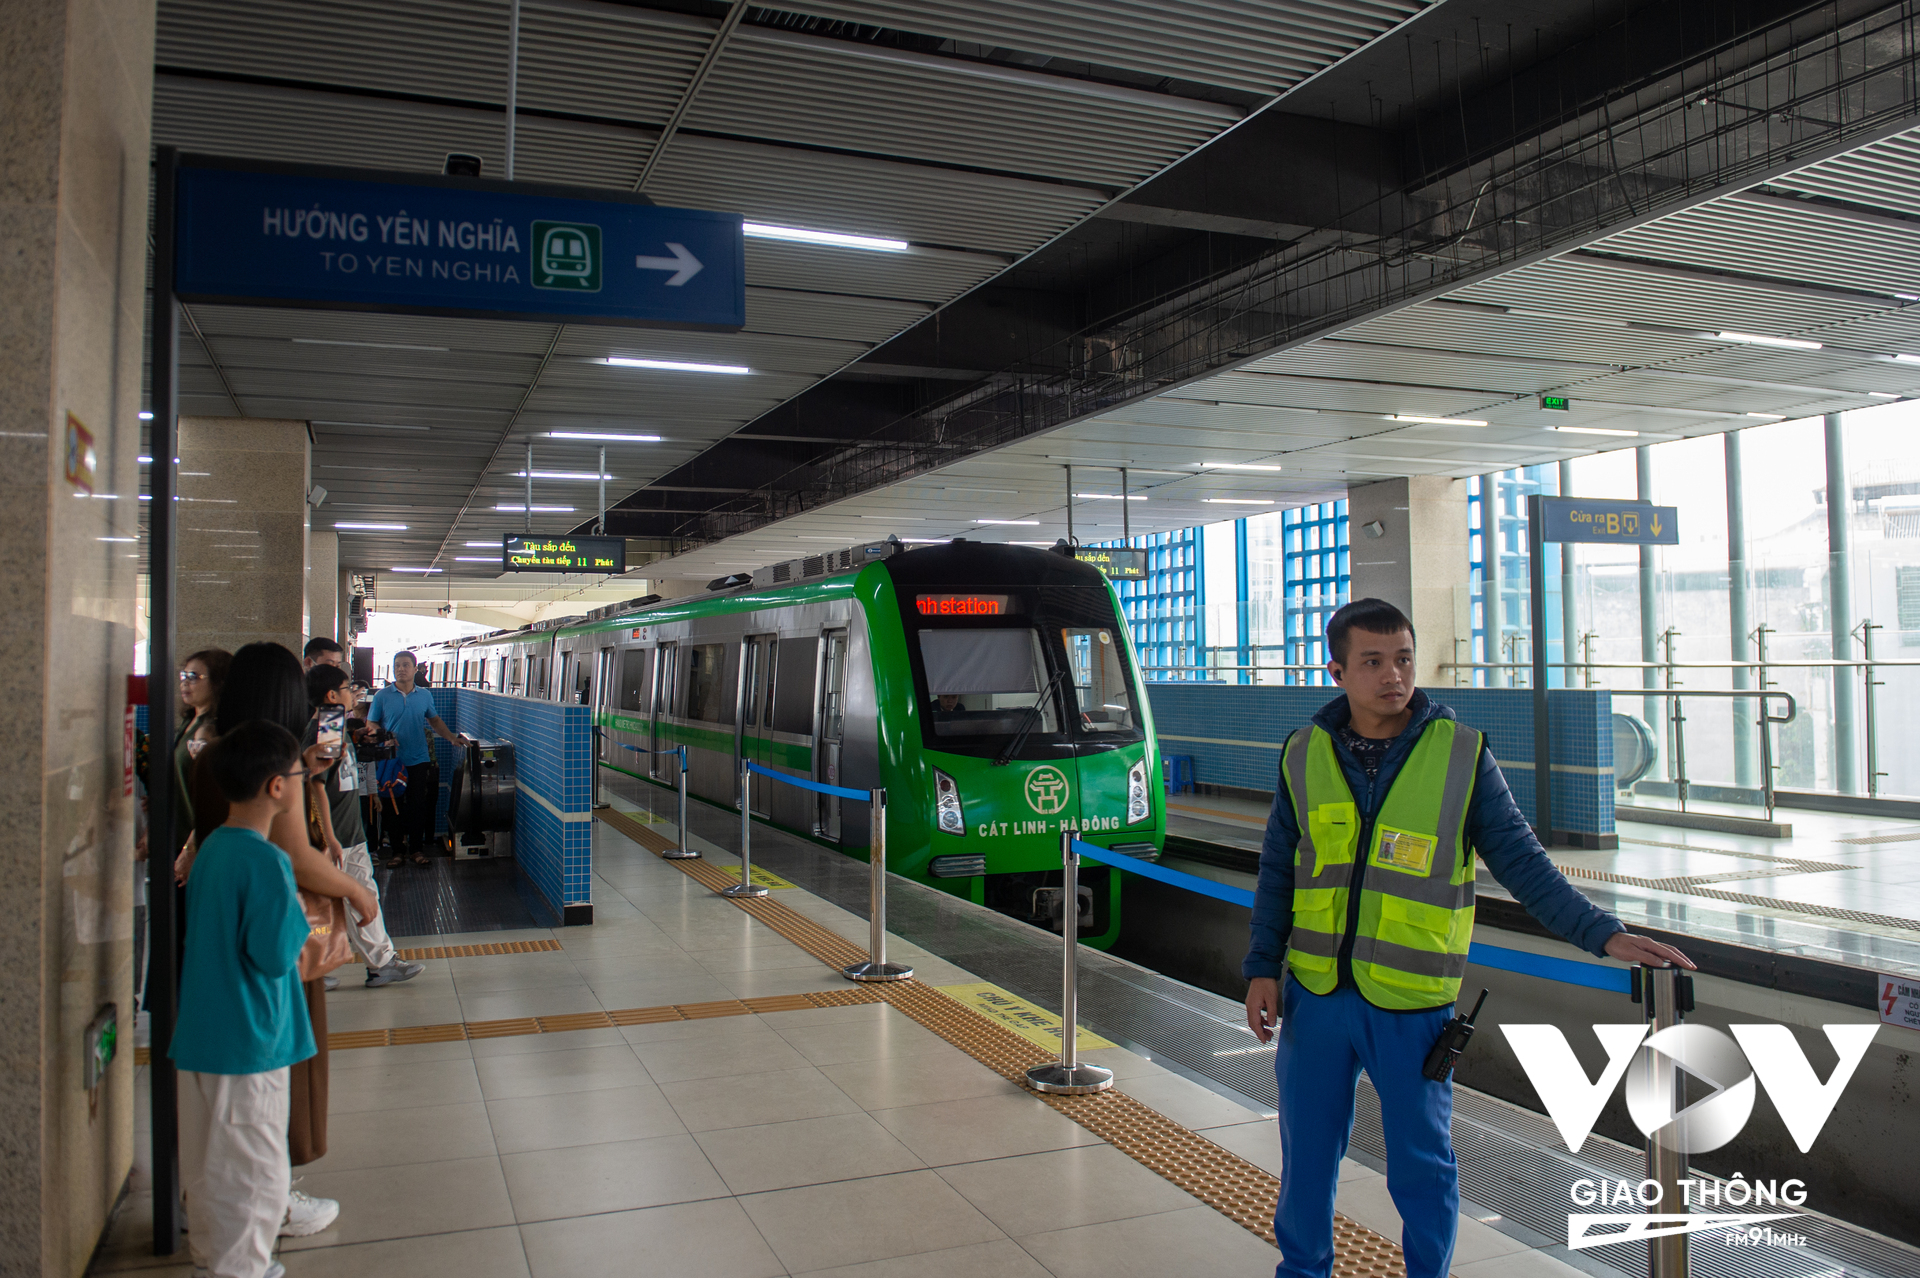 Trung tâm Quản lý giao thông công cộng thành phố Hà Nội dự báo, trong dịp Tết Dương lịch 2024 nhu cầu tăng cao hơn so với ngày thường khoảng 25-30%. Xe buýt và đường sắt đô thị Cát Linh - Hà Đông sẽ hoạt động xuyên dịp Tết Dương lịch 2024 để phục vụ nhu cầu đi lại của người dân.